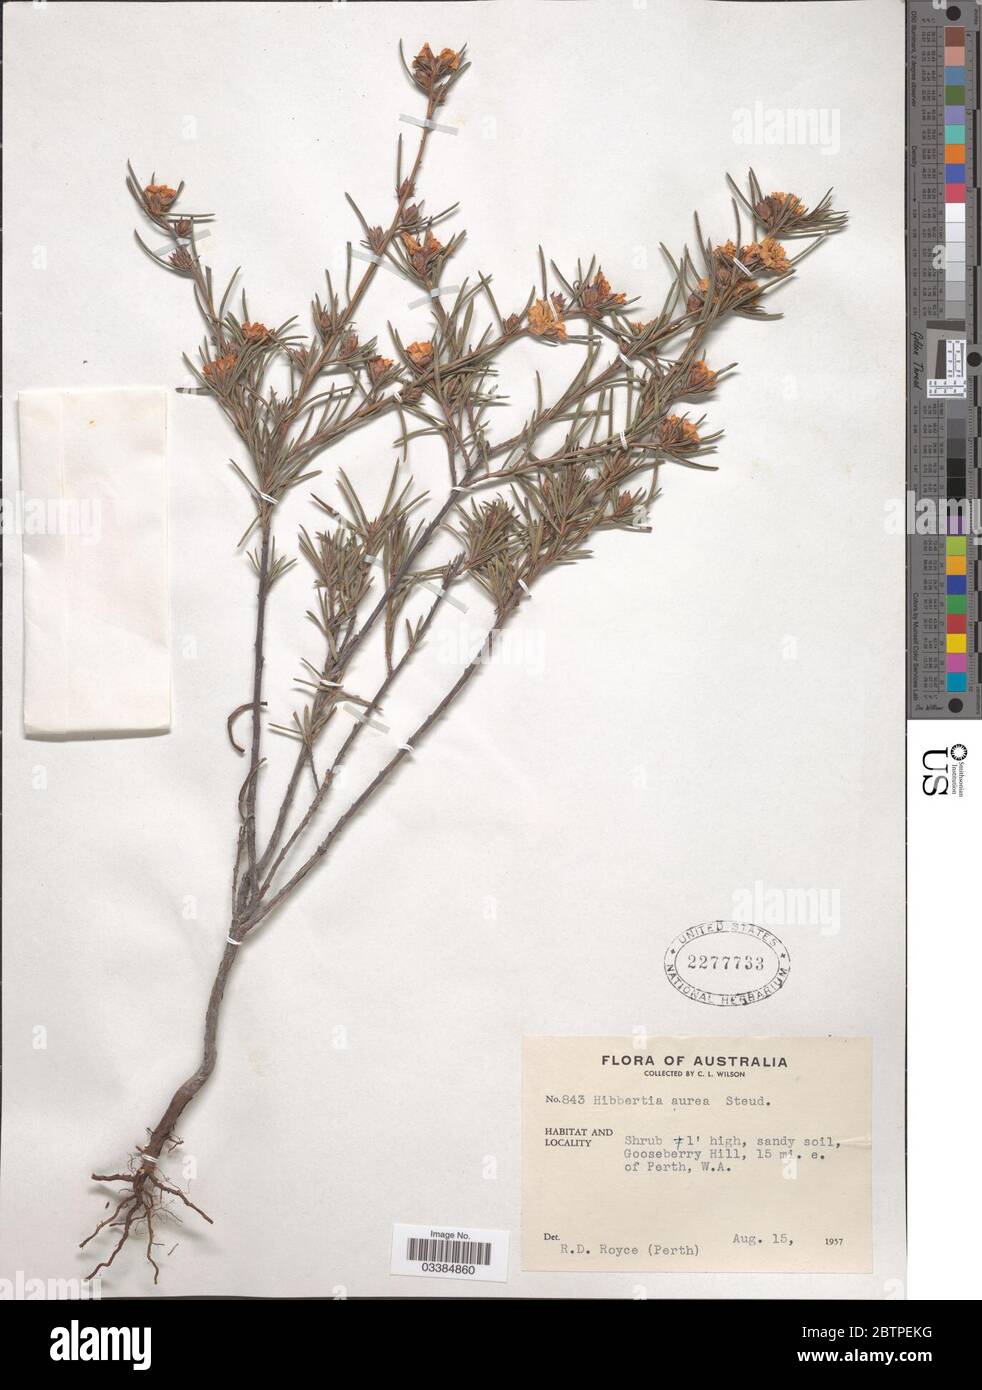 Hibbertia aurea Steud. Stock Photo